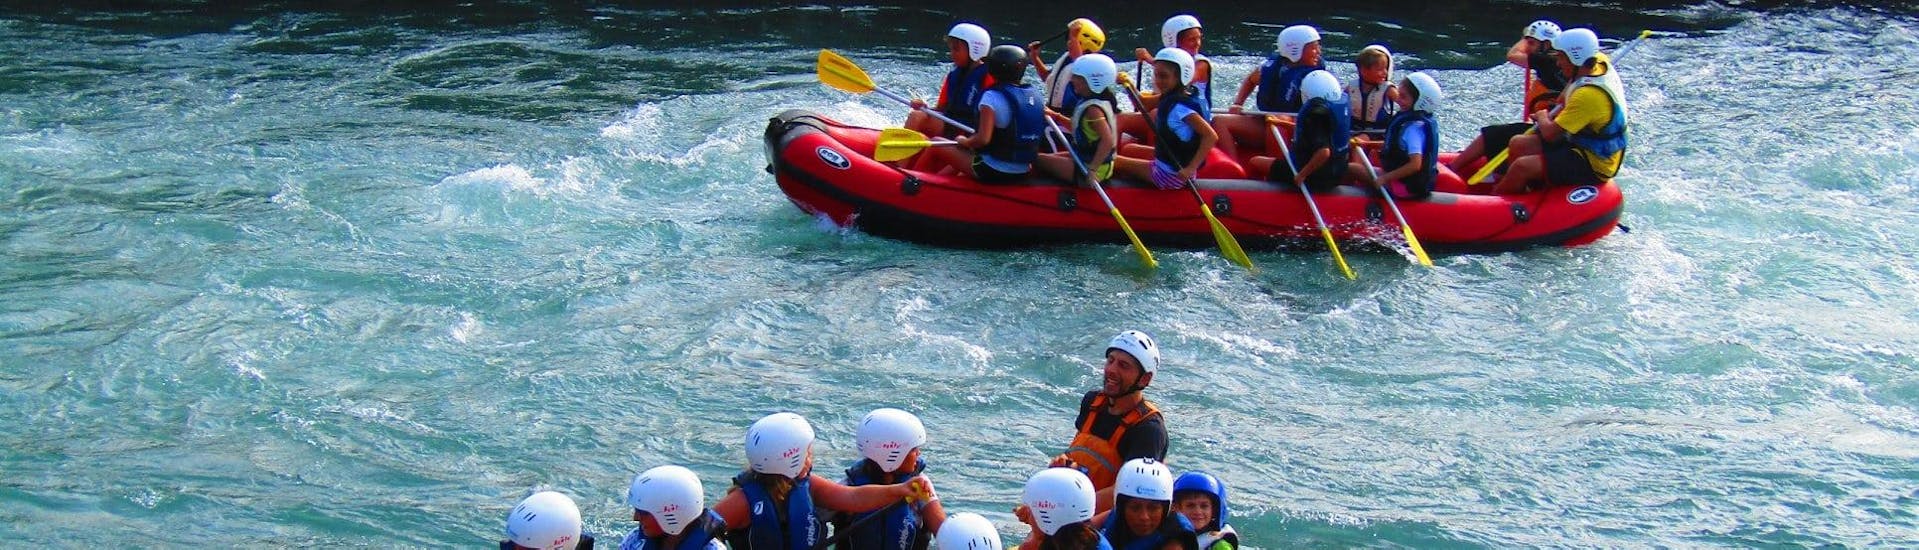 Rafting sul fiume Gari - Super Tour.